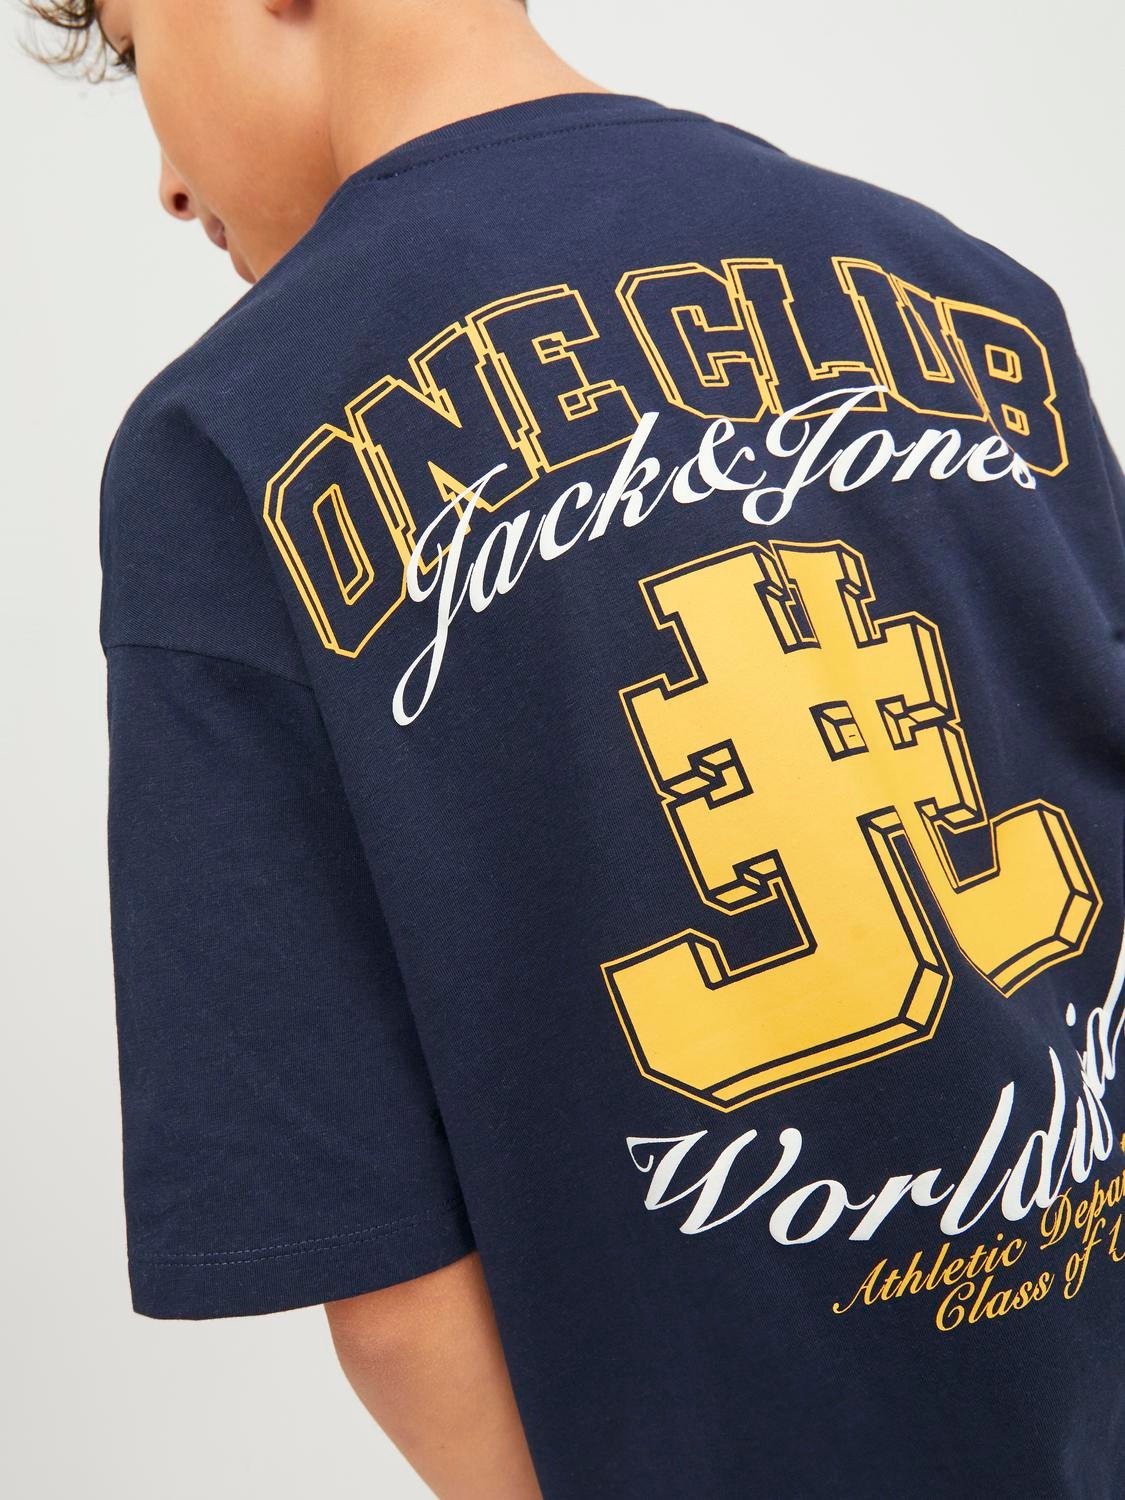 Jack & Jones T-shirt Imprimé Pour les garçons -Navy Blazer - 12254238